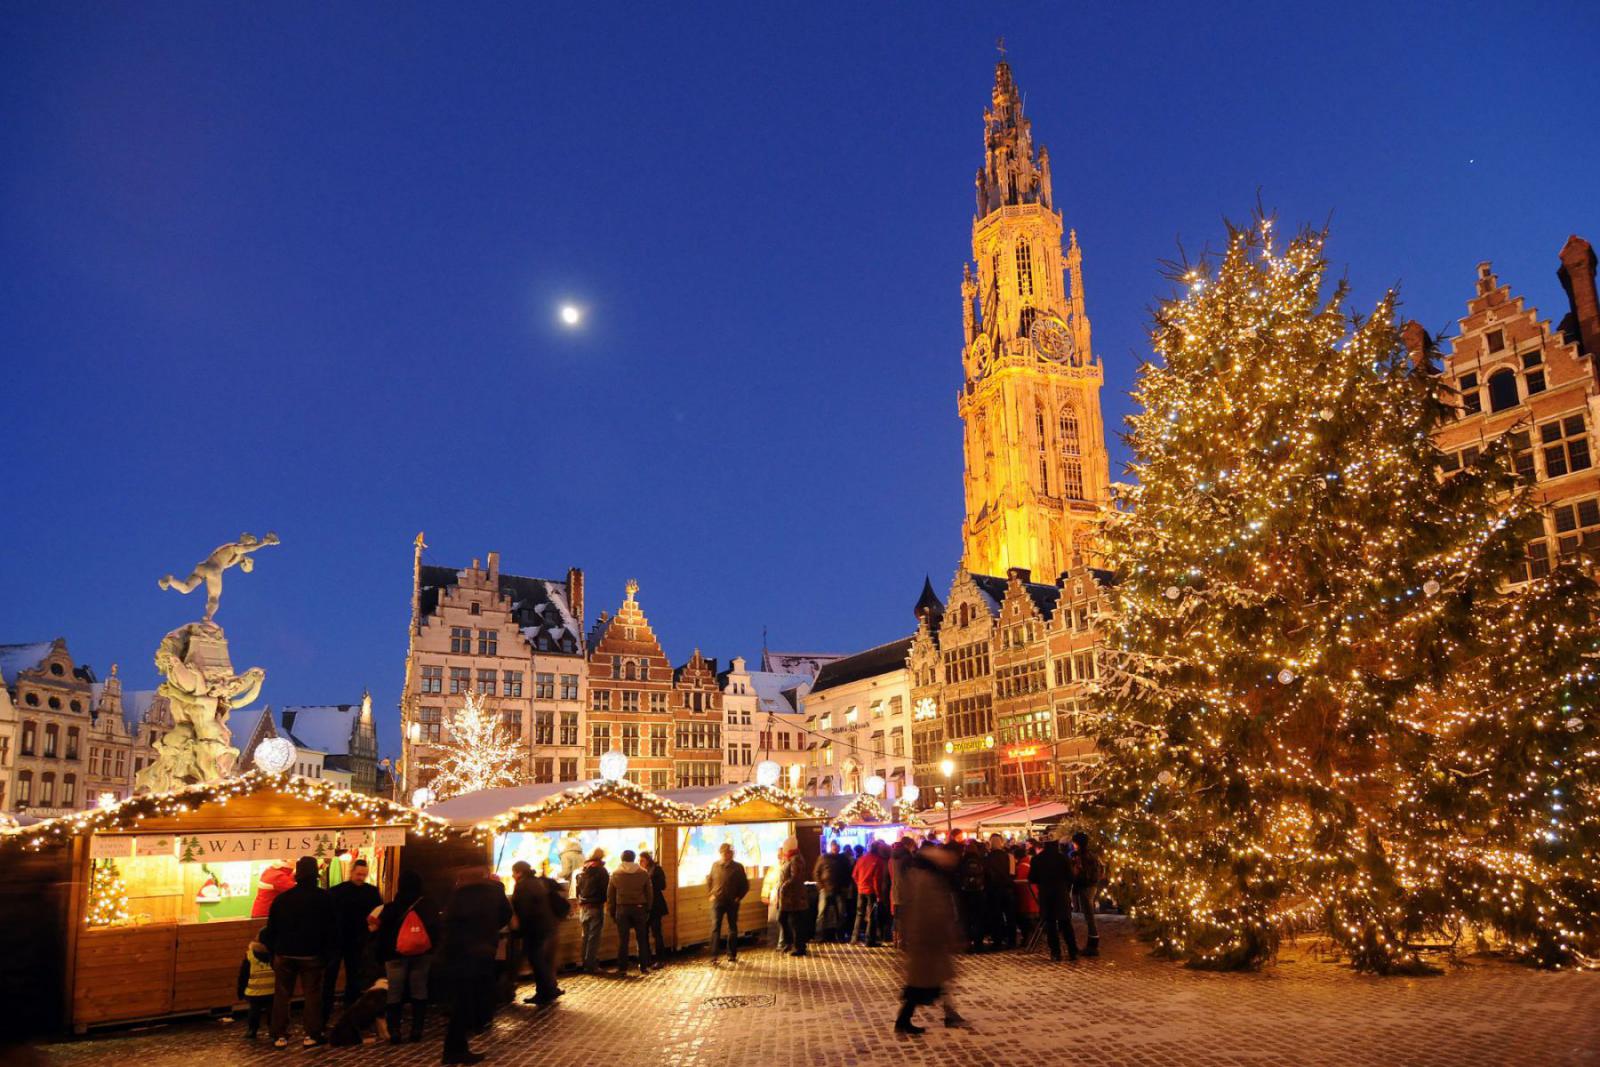 Geniet van de prachtige verlichting in Antwerpen | Antwerpen Toerisme en Congres